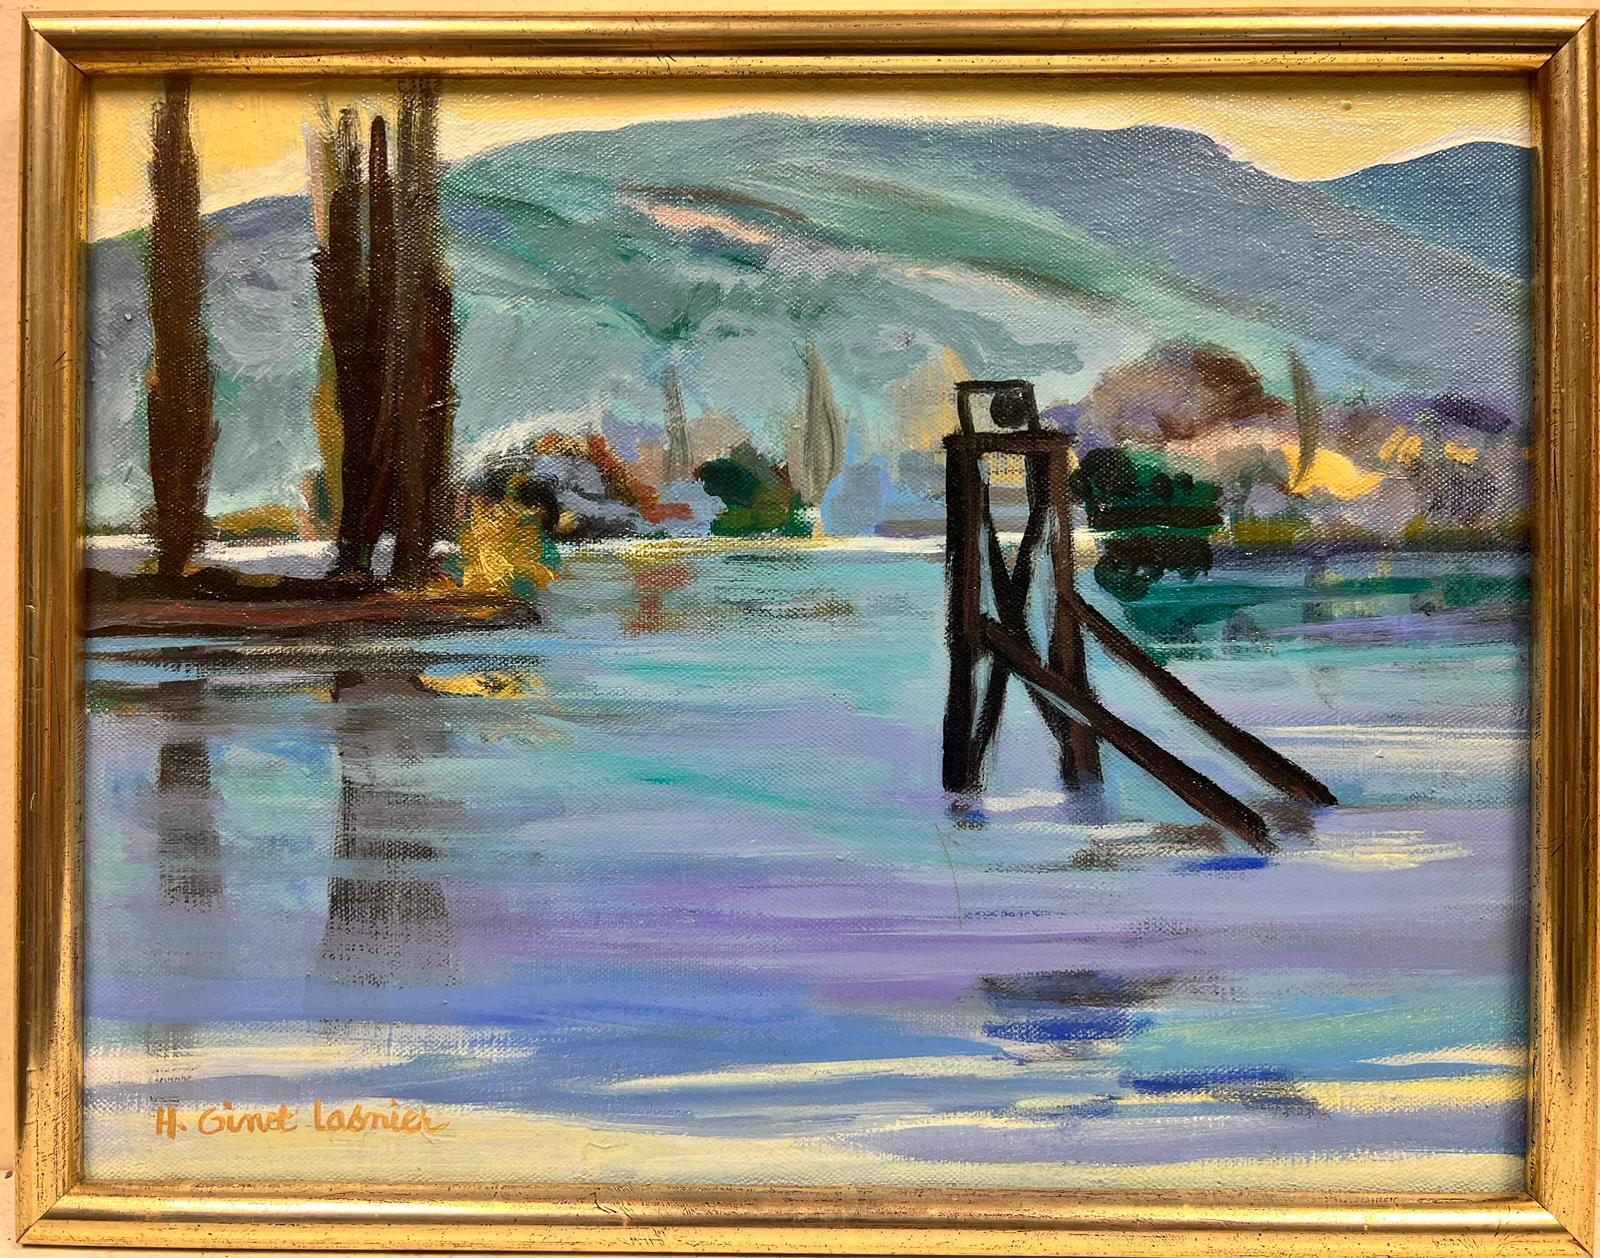 Landscape Painting Huguette Ginet-Lasnier  - Peinture à l'huile de paysage marin moderniste français des mers bleu turquoise 